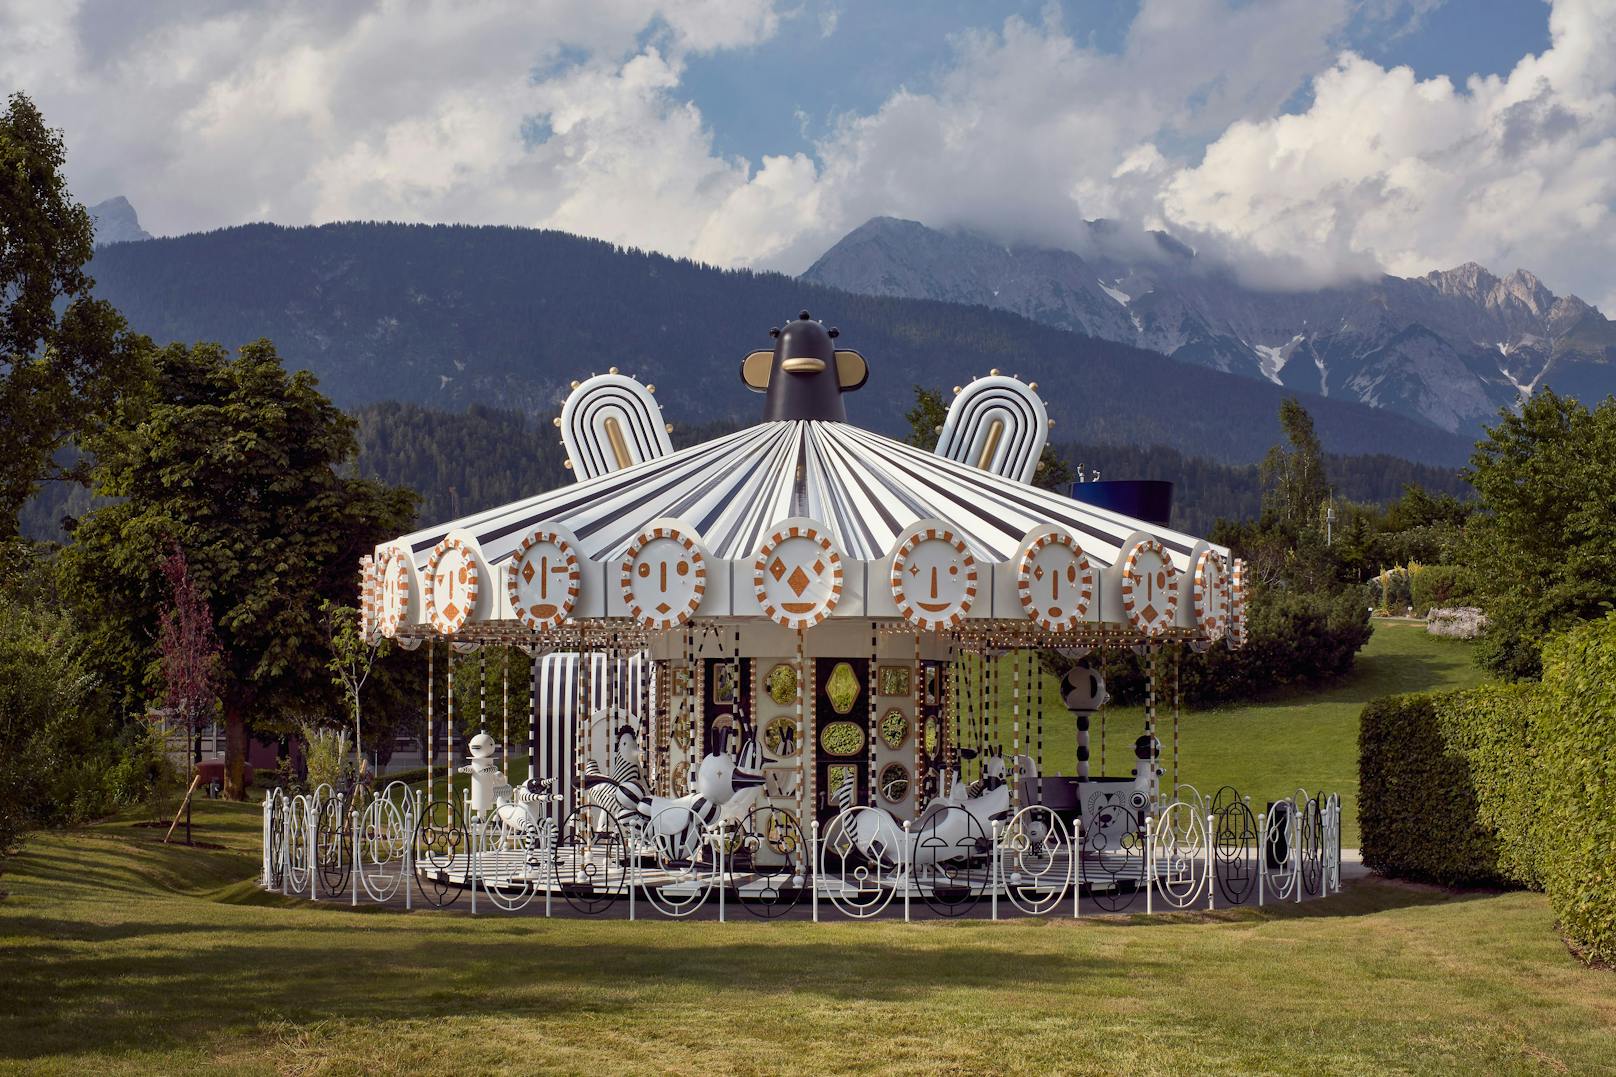 Die Tiroler Berge sind der perfekte Hintergrund für die Swarovski Kristallwelten und die Performance der Artisten. Im Bild: Das Karussell, installiert von Jaime Hayon.